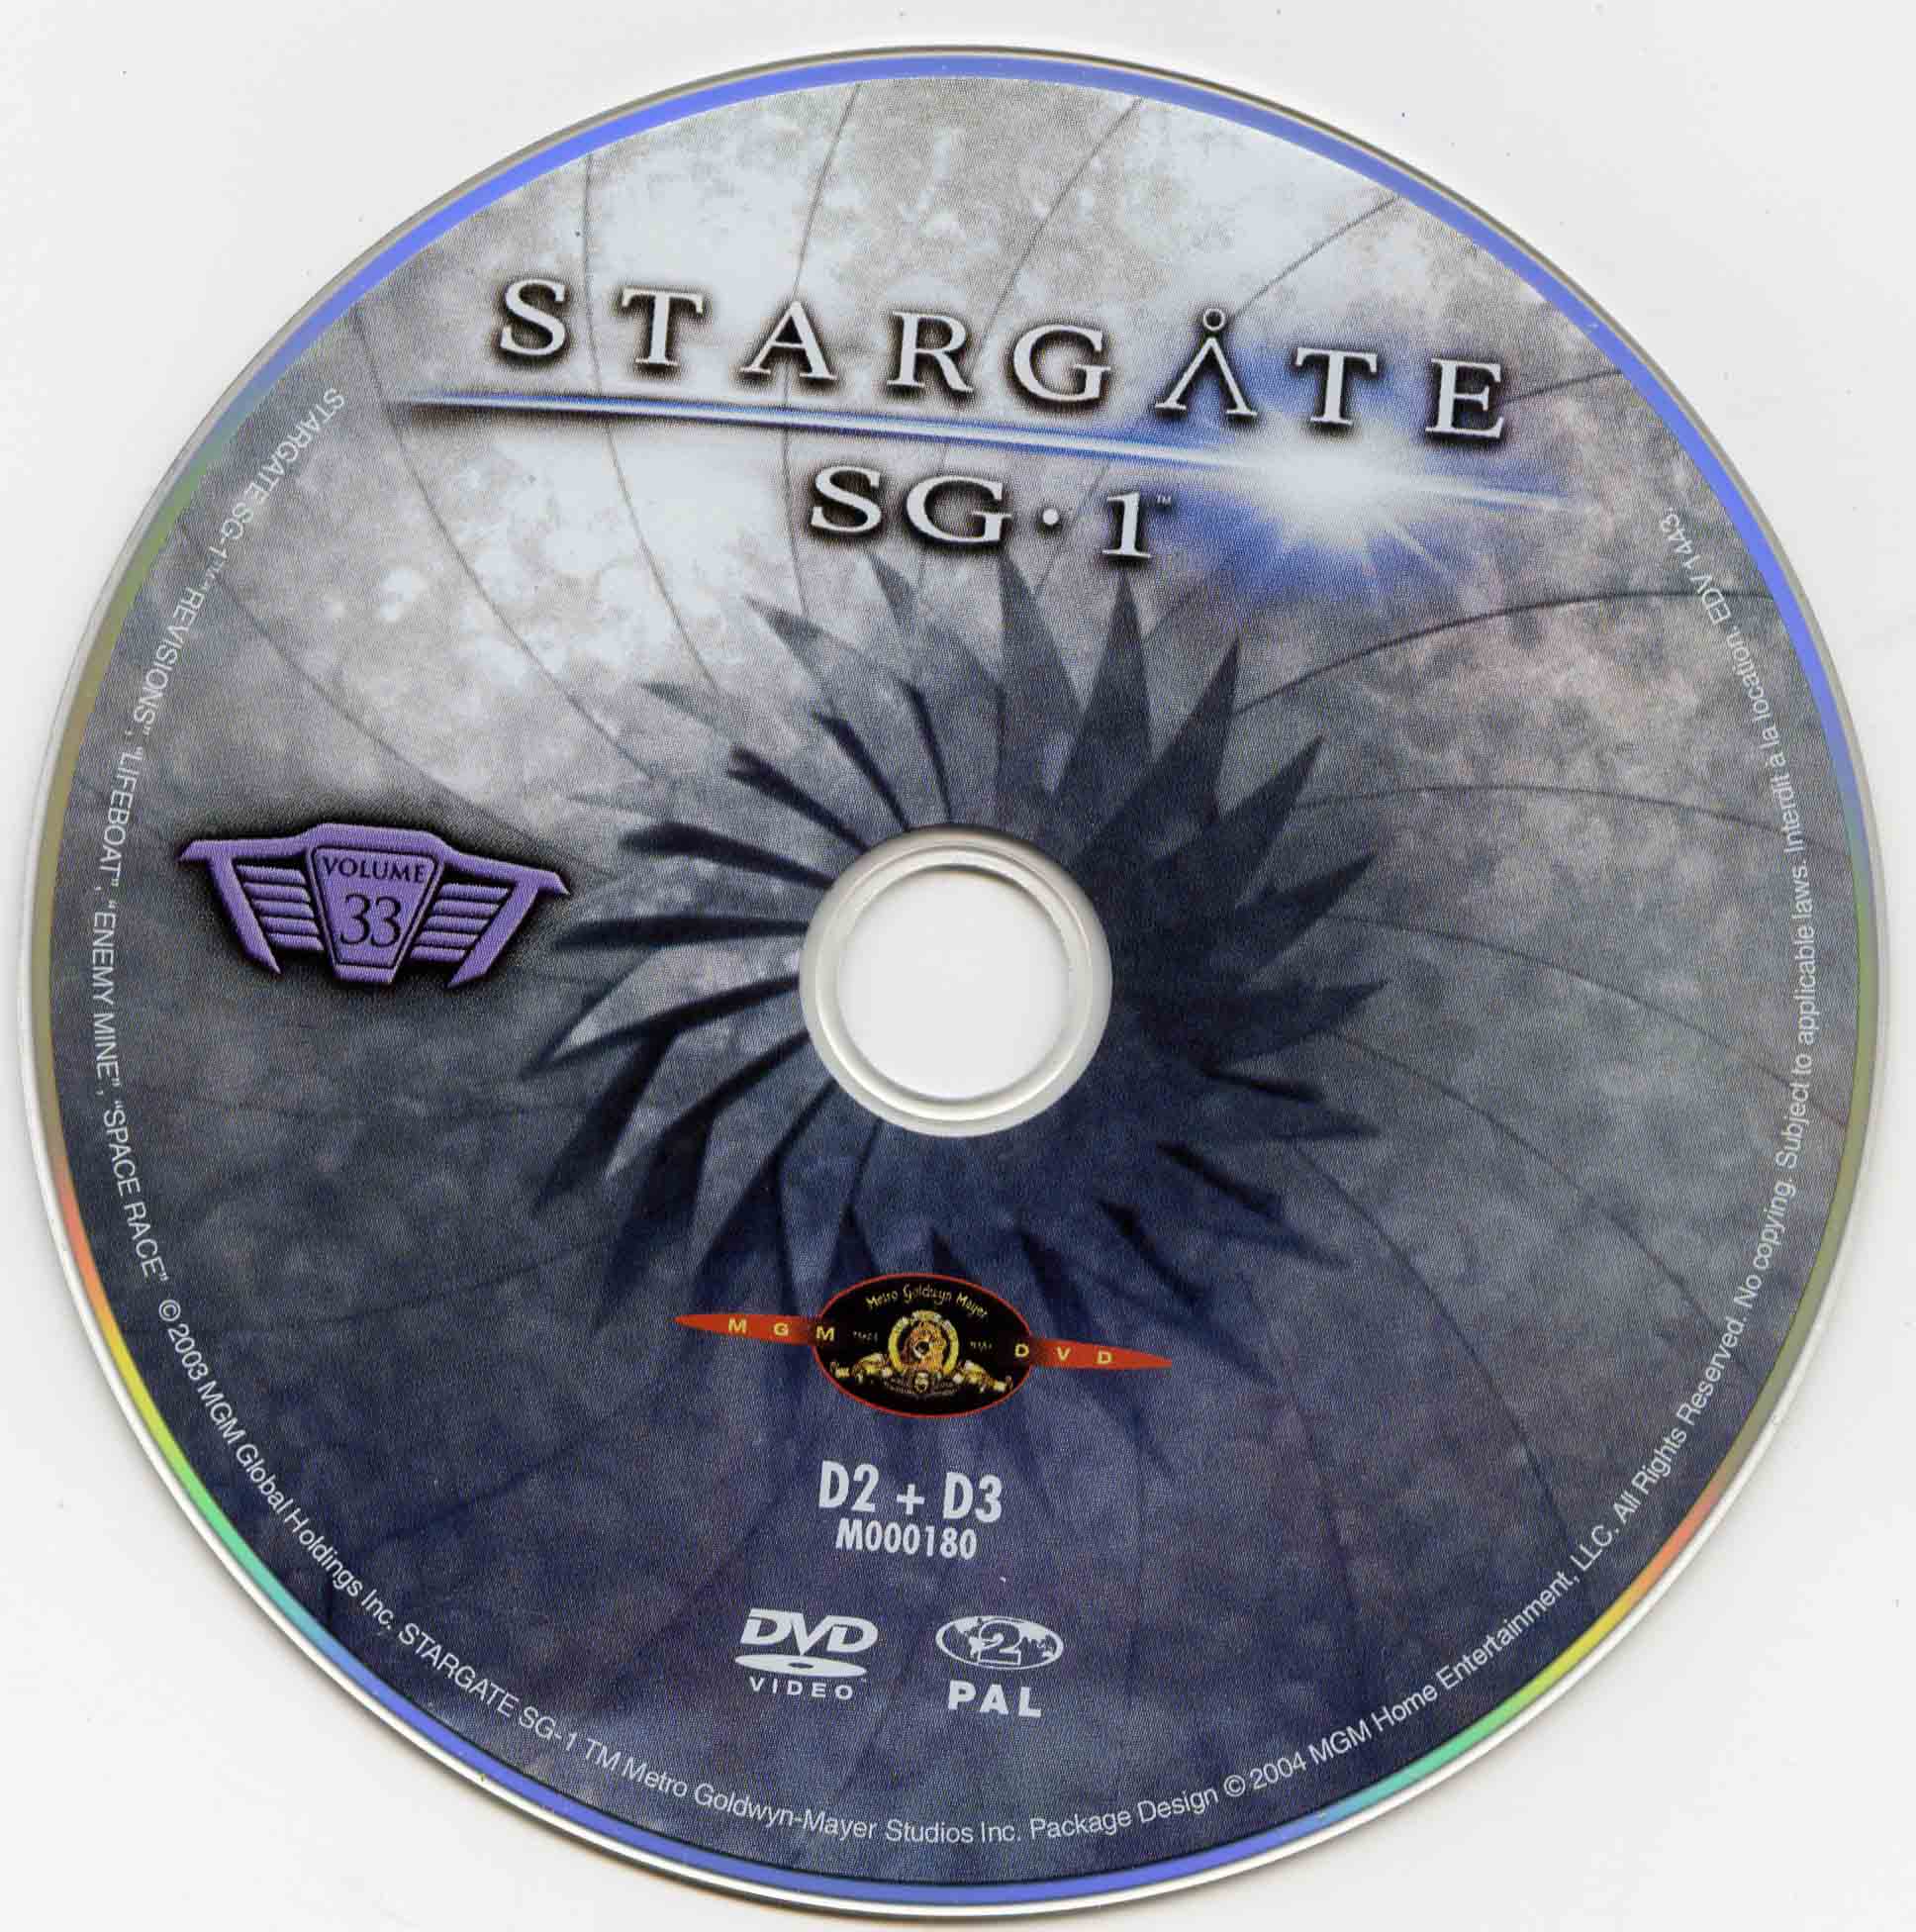 Stargate SG1 vol 33